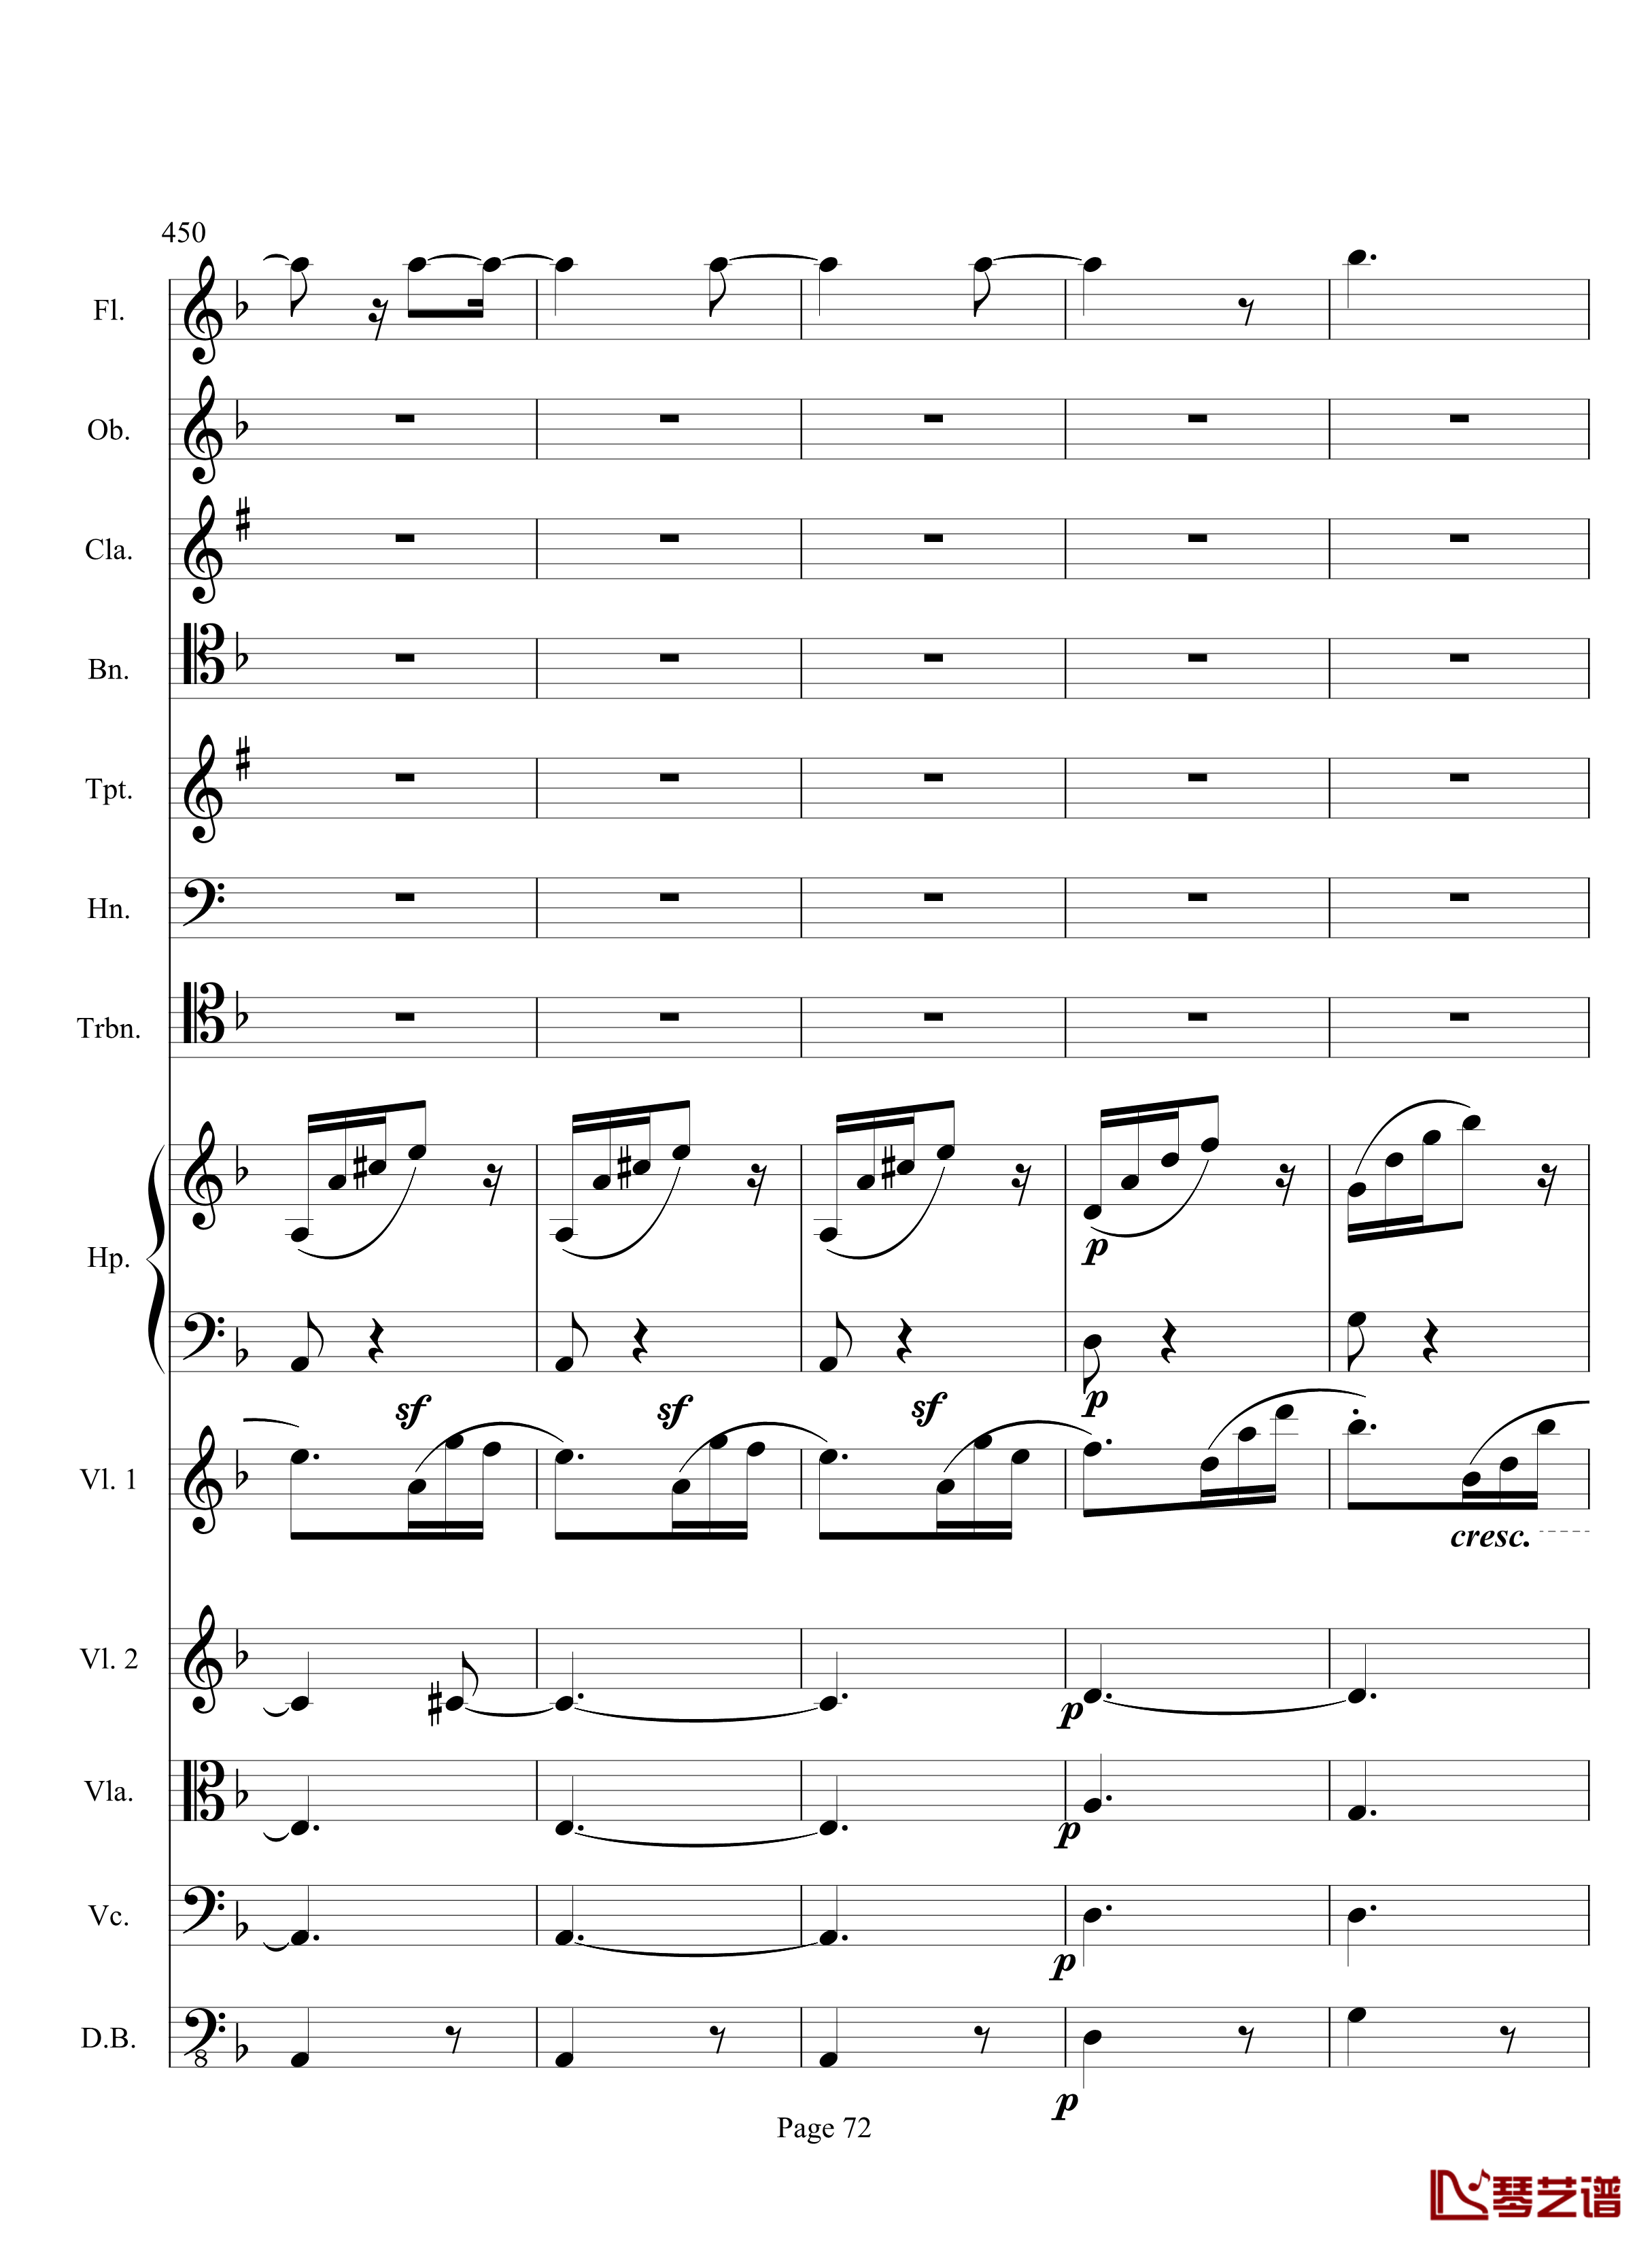 奏鸣曲之交响钢琴谱-第17首-Ⅲ-贝多芬-beethoven72